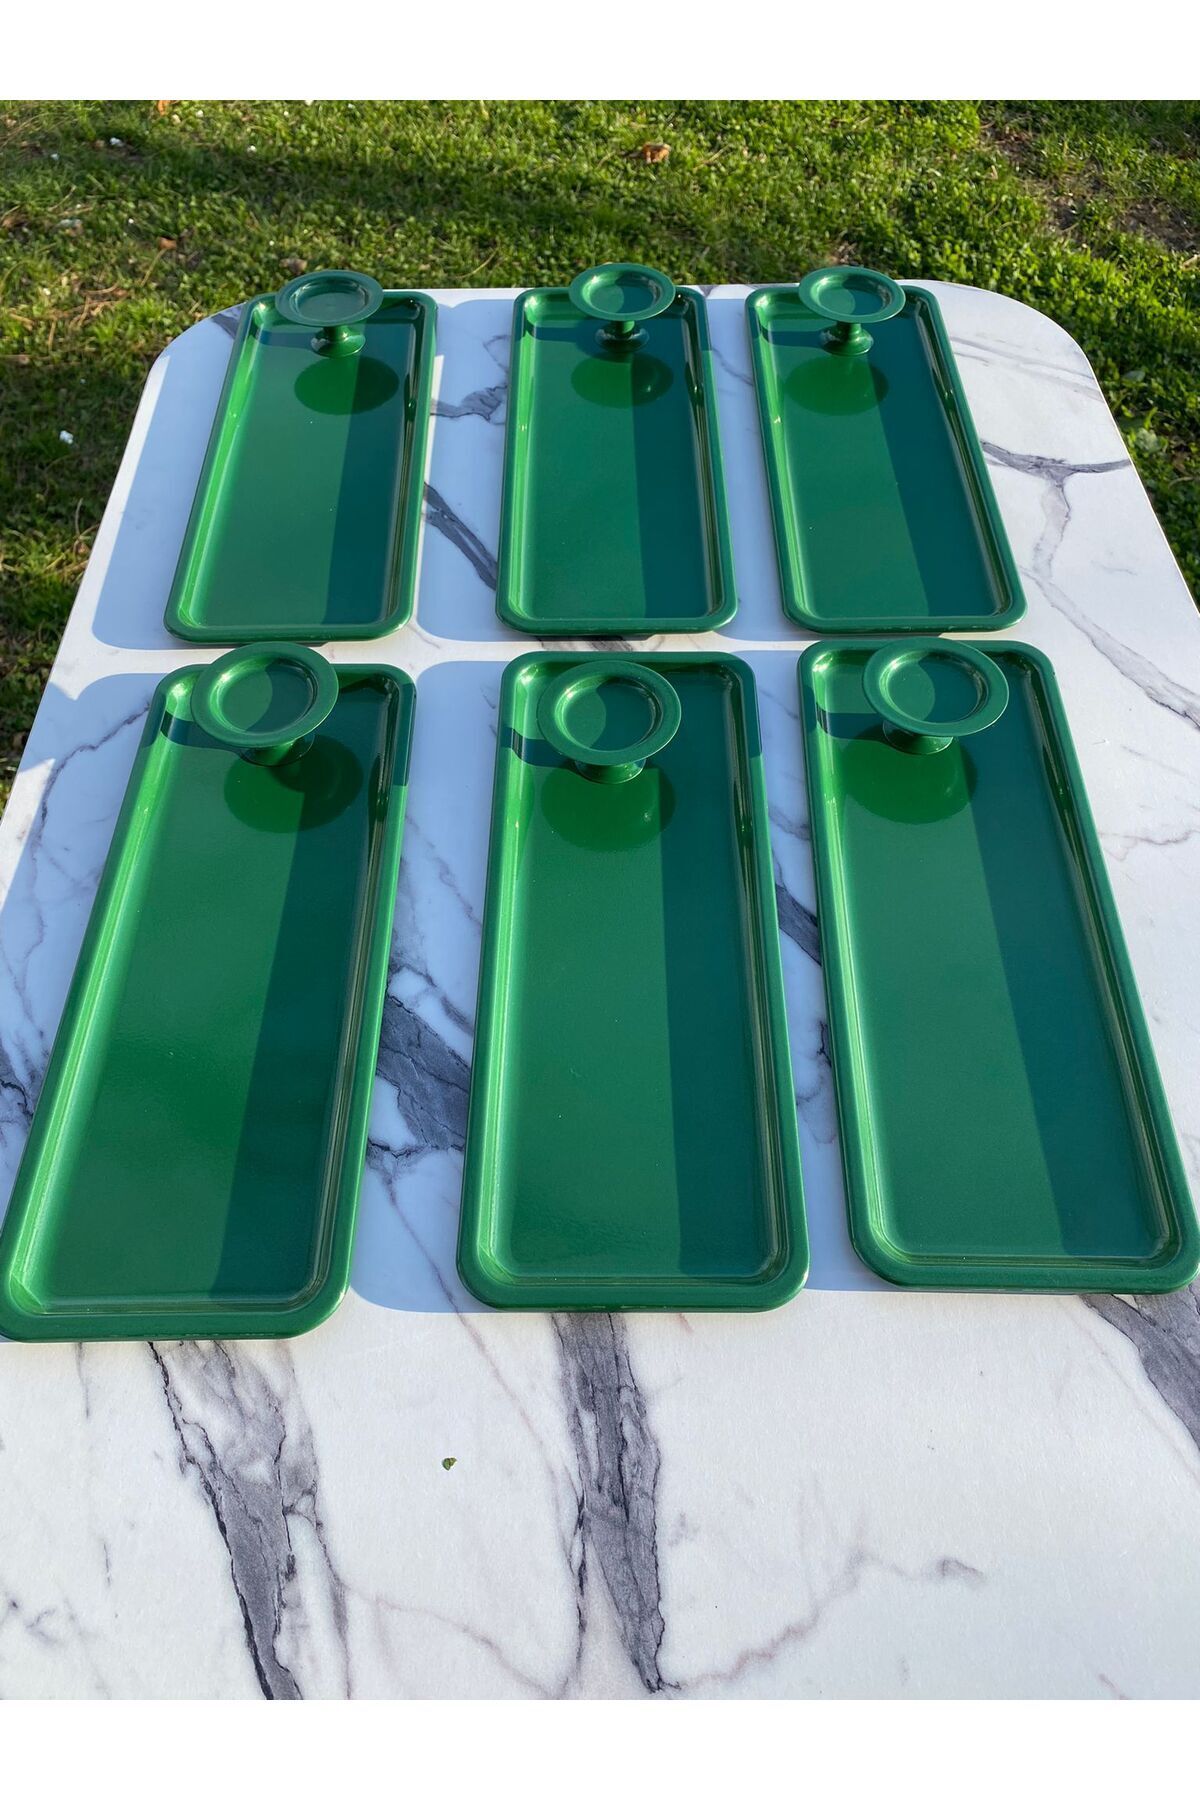 Aslı Hediyelik 2 Model 6'lı Yeşil Baton Tepsi Ve 6'lı Yeşil Makaronluk, Kahve Ve Pasta Servisi Sunum Tepsisi